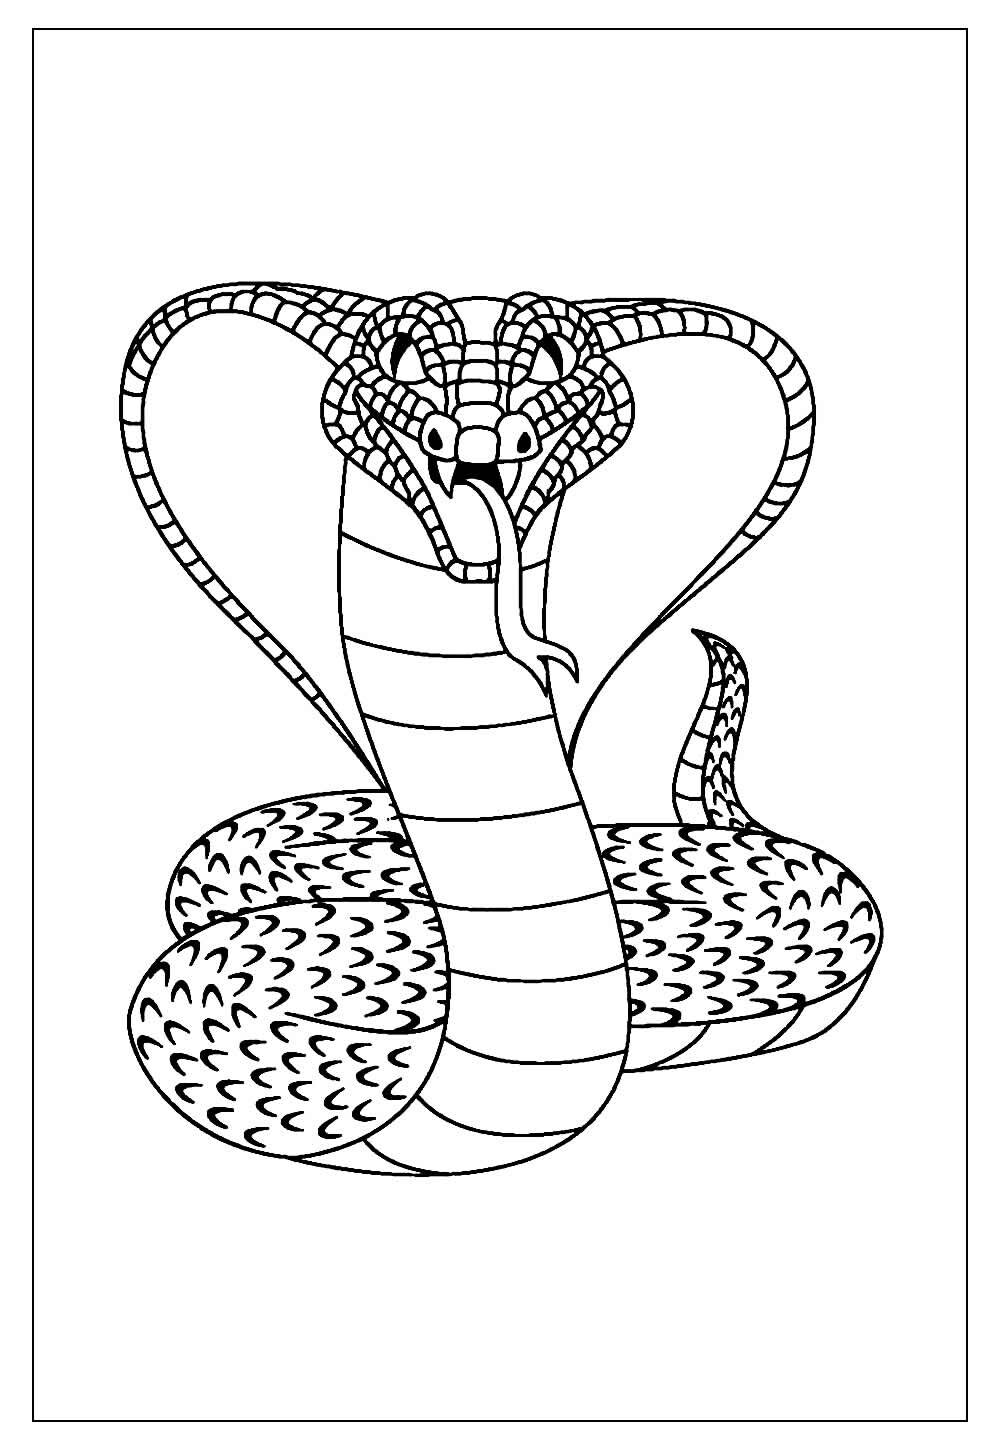 Desenho Para Colorir cobra - Imagens Grátis Para Imprimir - img 18015